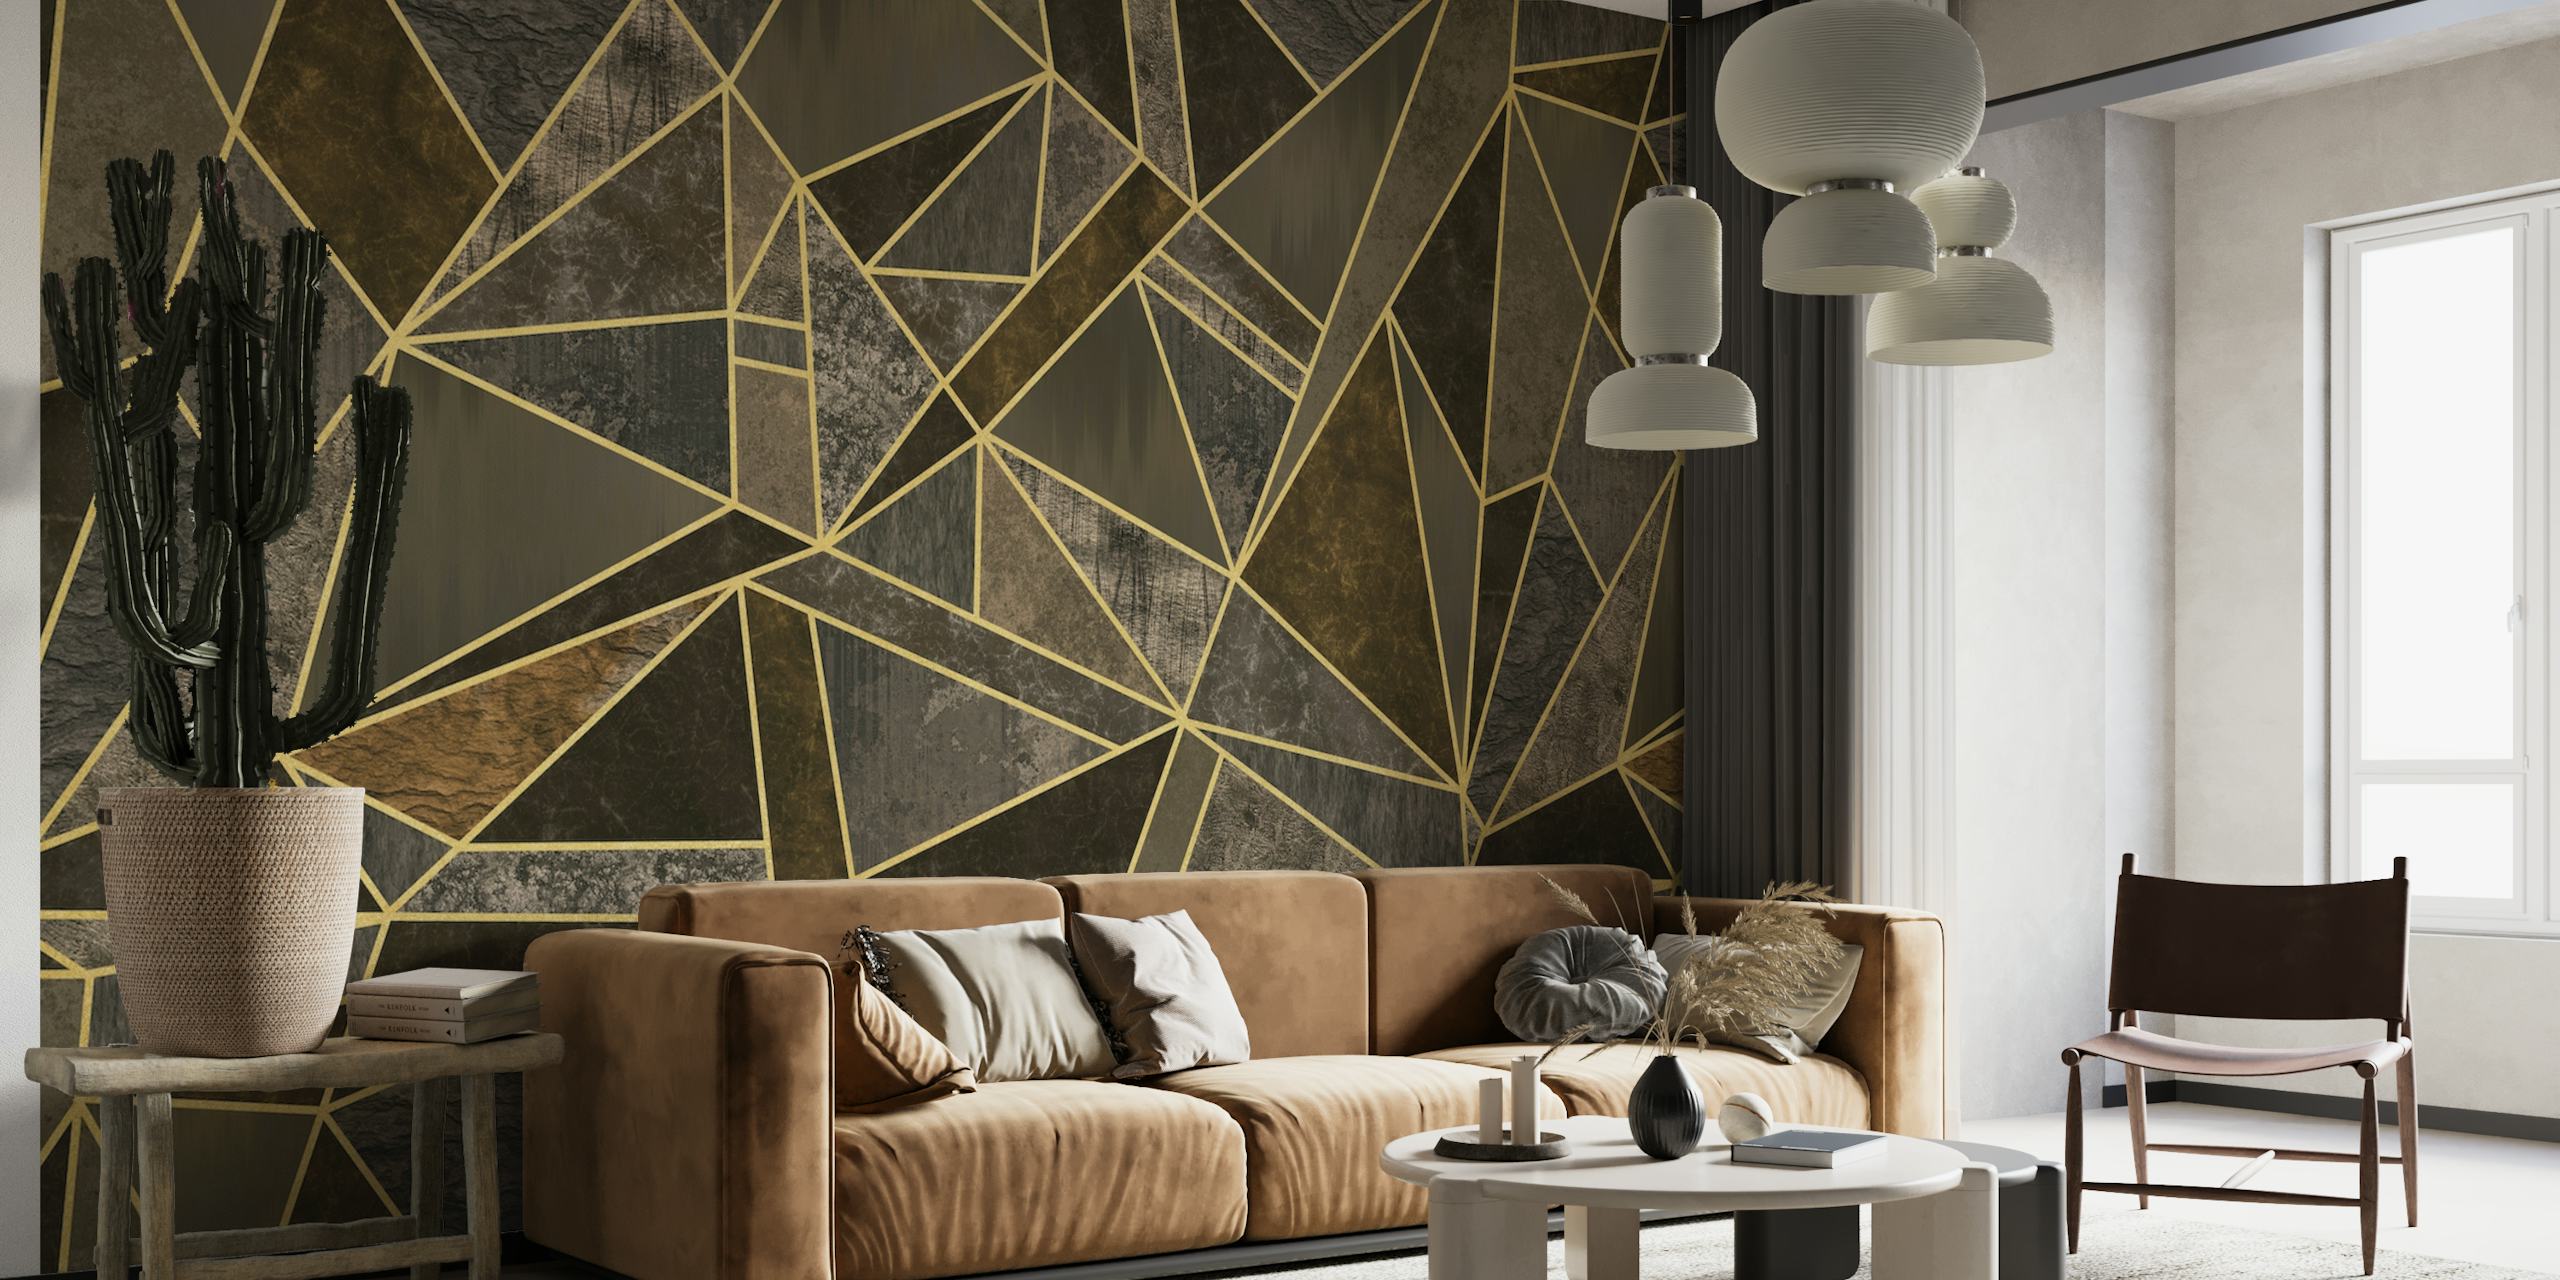 Luxe muurschildering met geometrisch mozaïekpatroon in bruin en goud